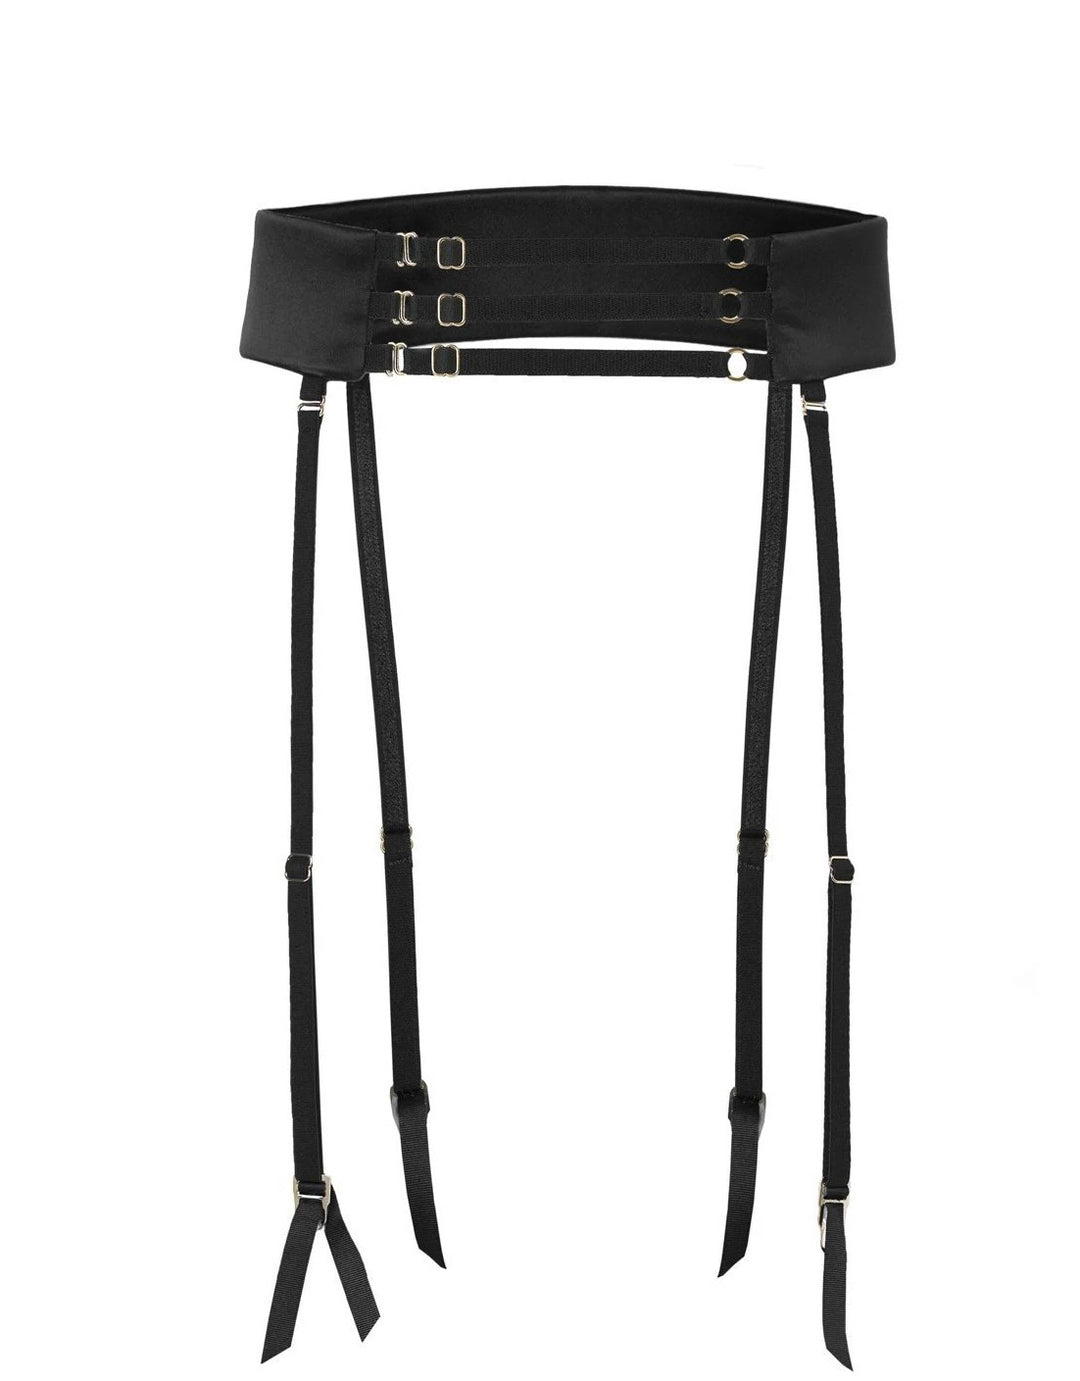 Murmur Secure Belt in Black, Removable Suspenders